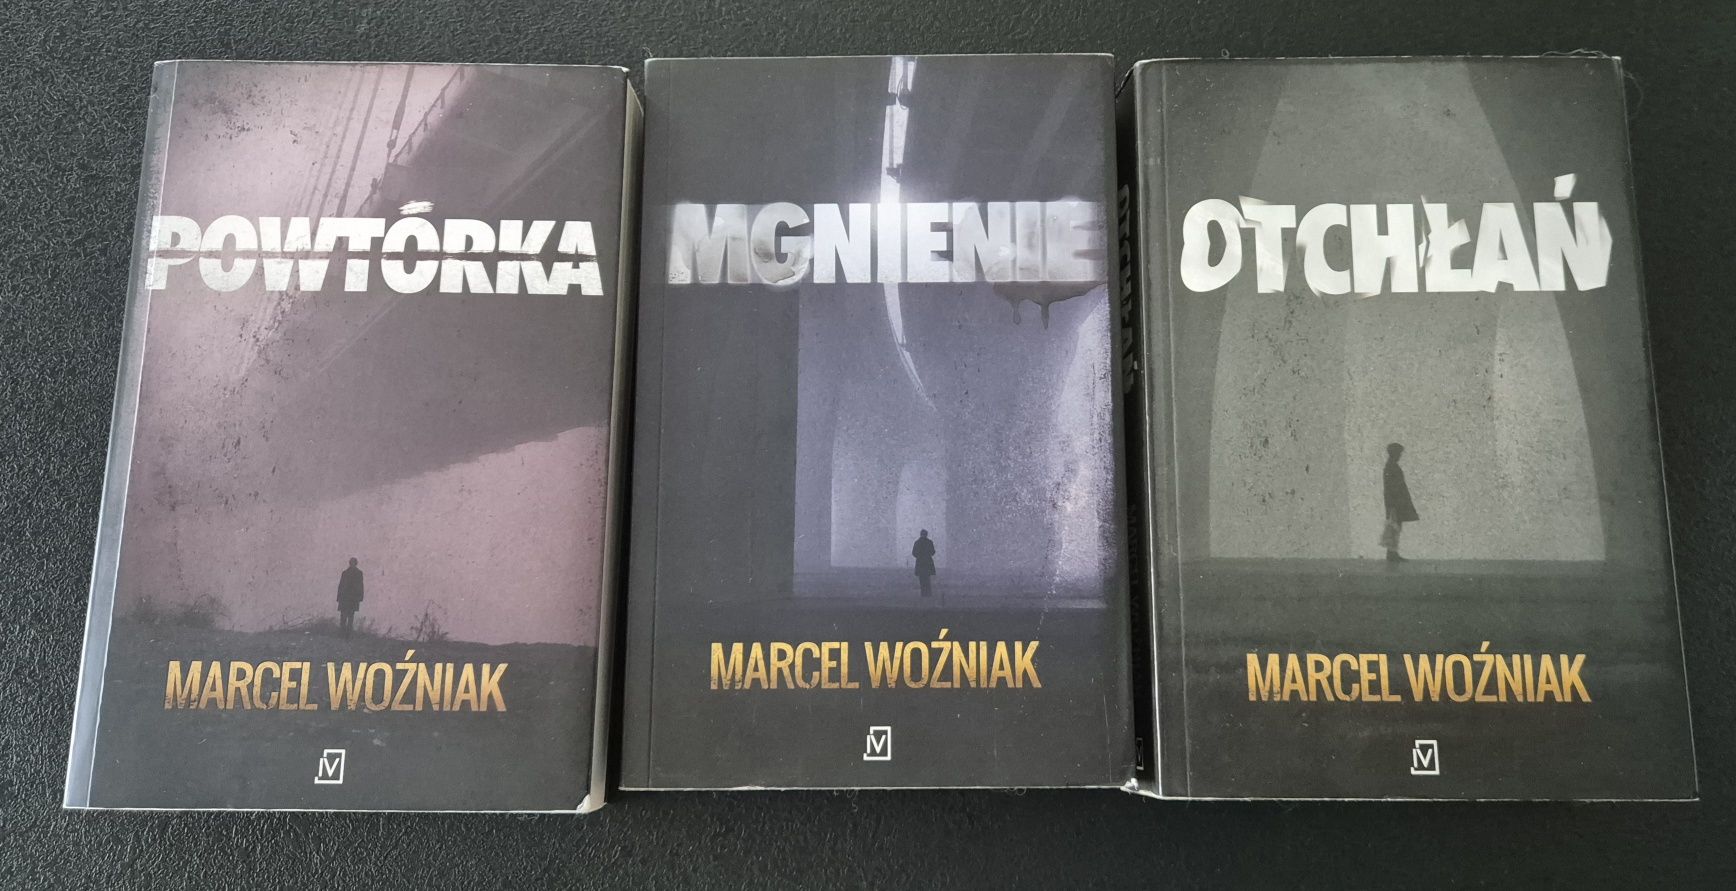 Marcel Woźniak seria Powtorka Mgnienie Odchlan